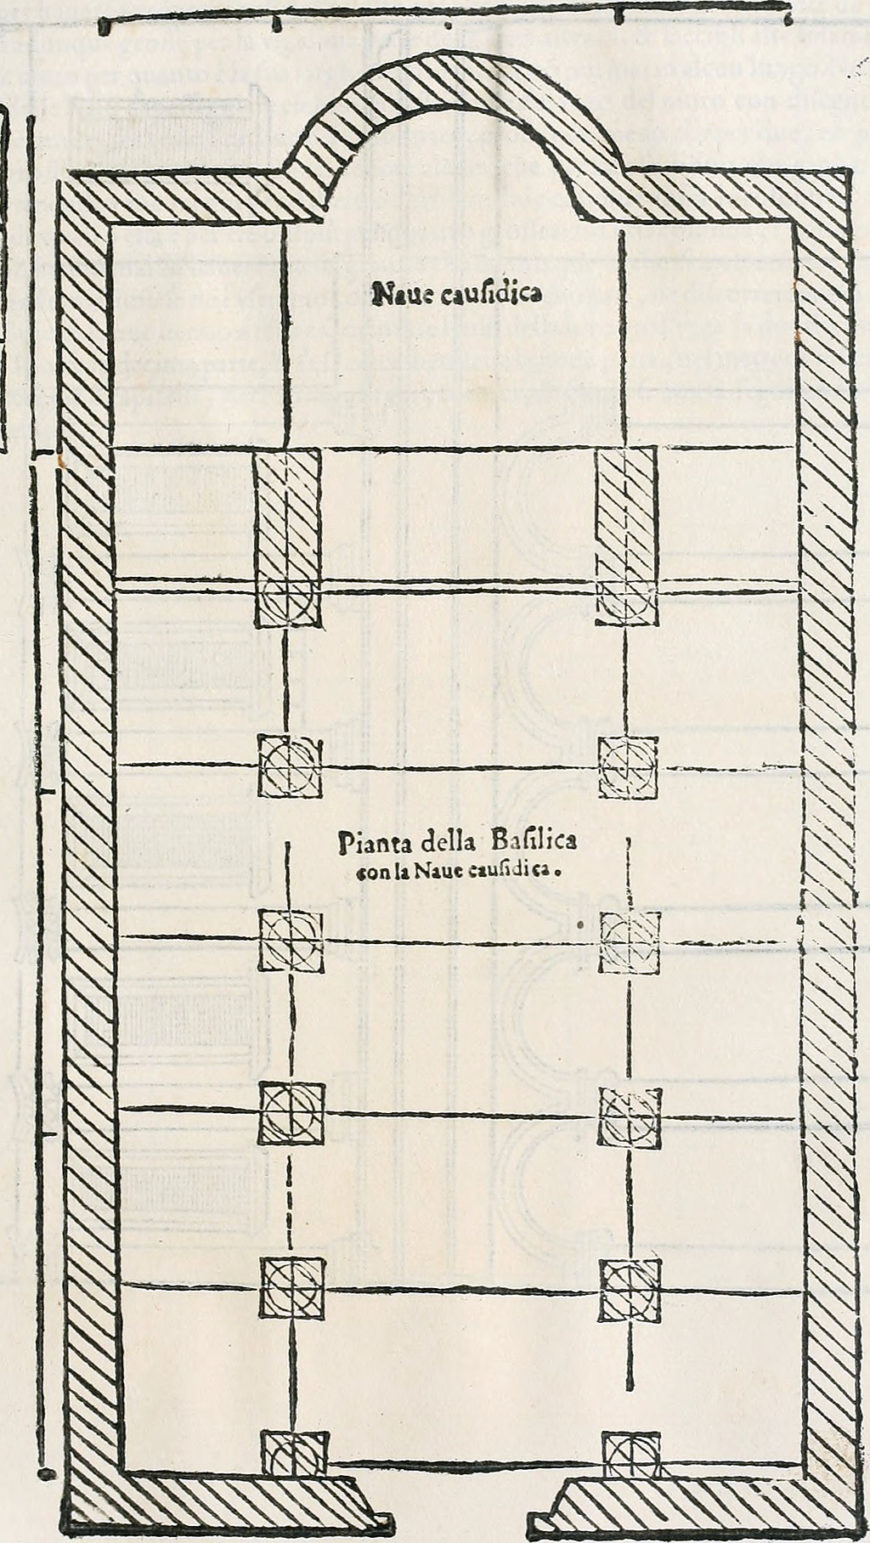 Basilica plan in Leon Battista Alberti, De re aedificatoria, 1565 edition